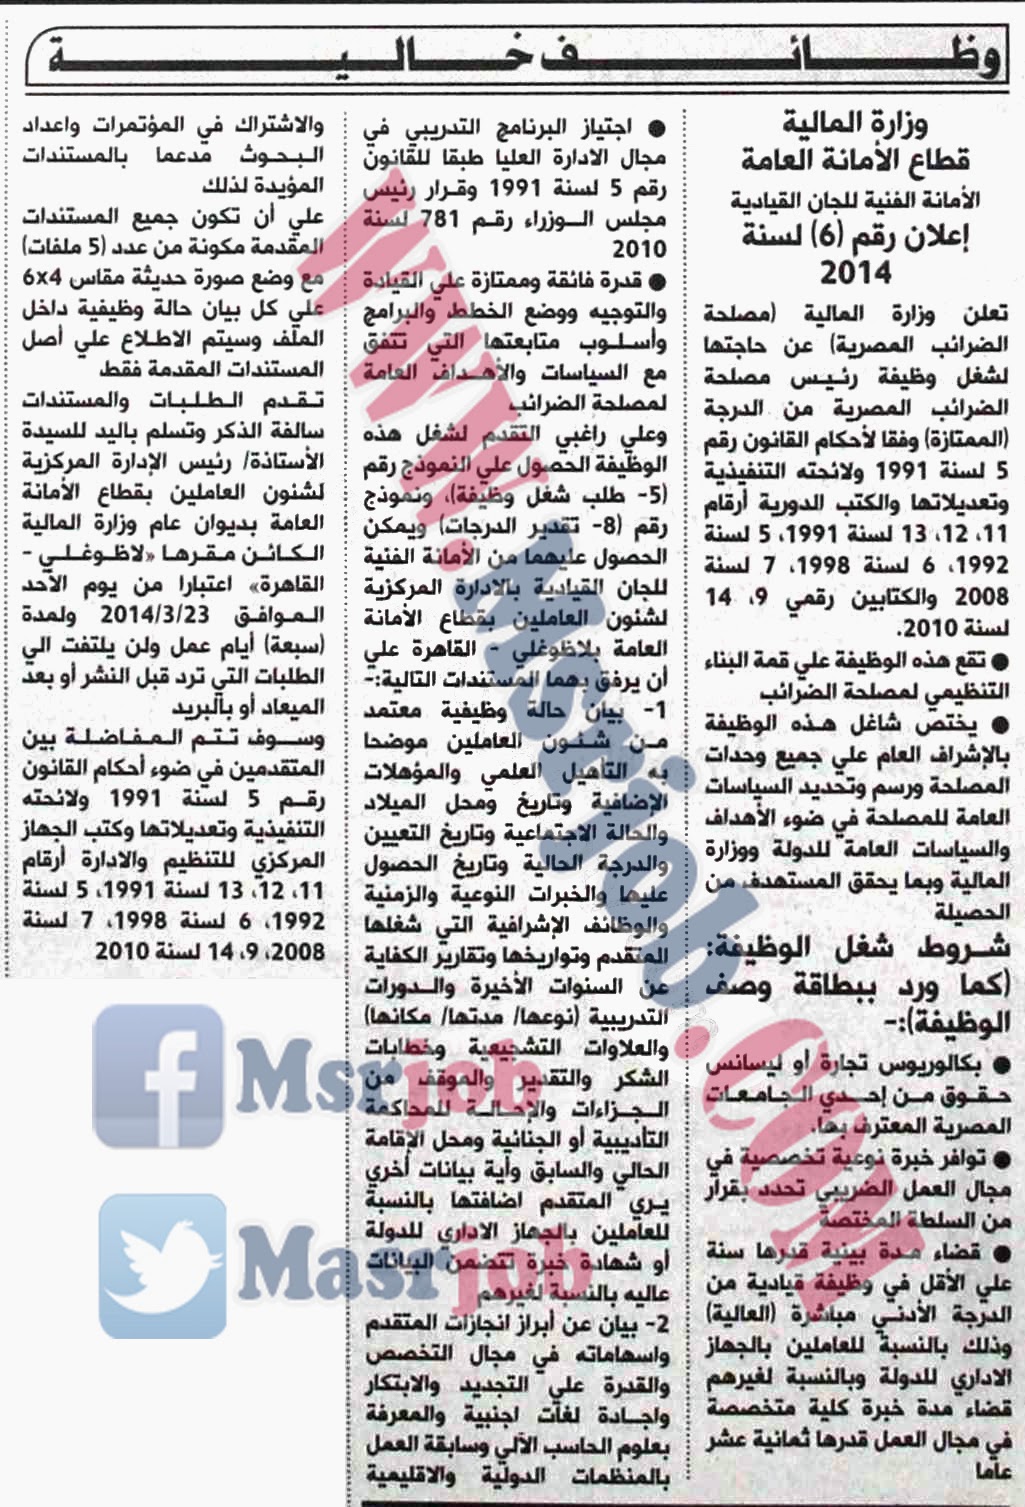 وظائف مصلحة الضرائب الاعلان رقم 6 لسنة 2014 وظائف الحكومة المصرية 2014 1